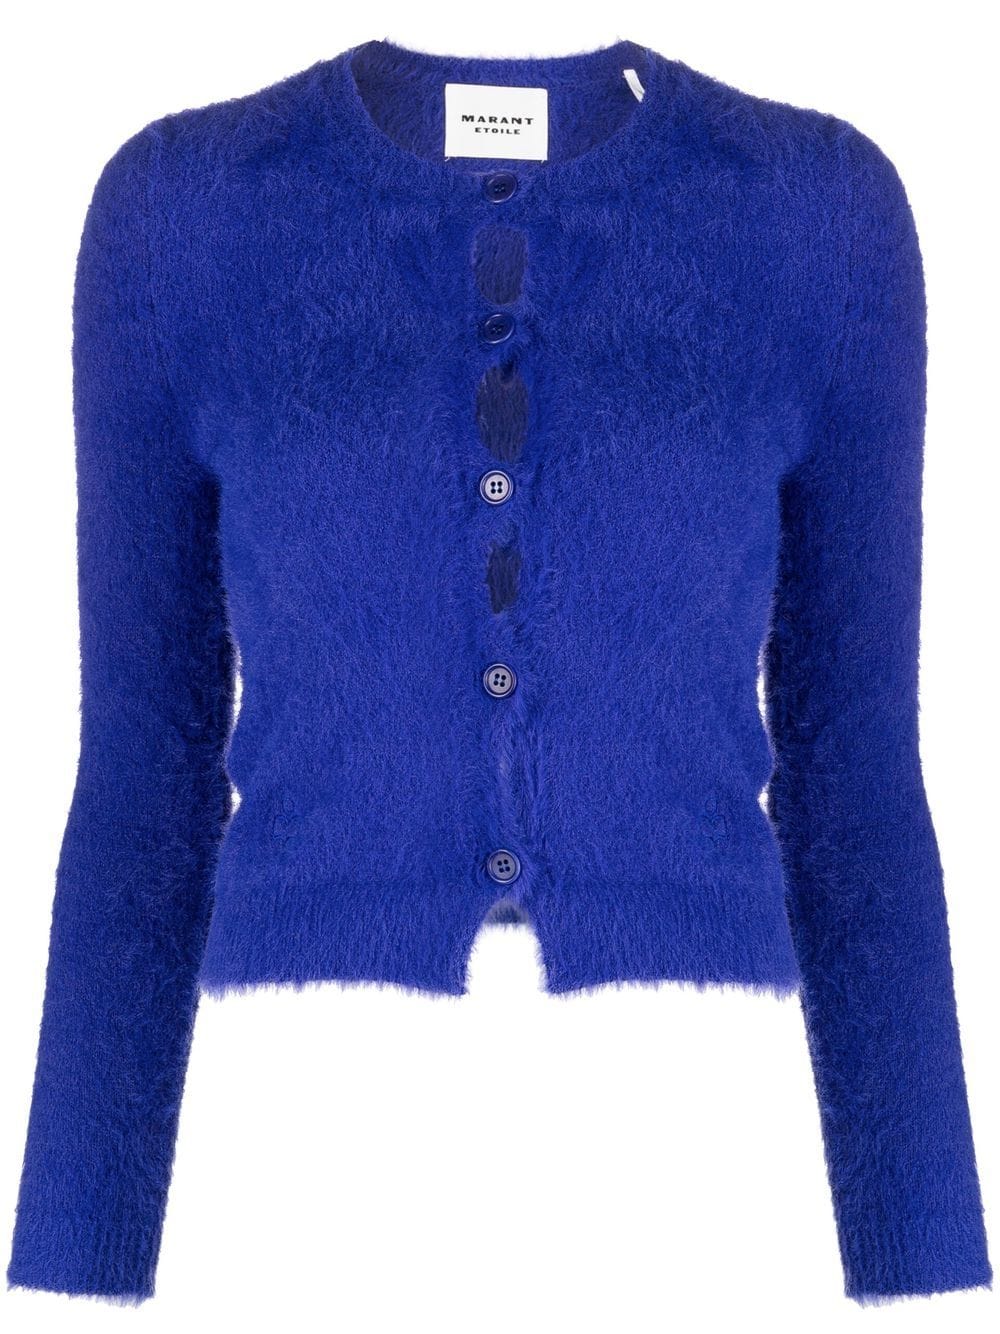 MARANT ÉTOILE button-front knitted cardigan - Blue von MARANT ÉTOILE